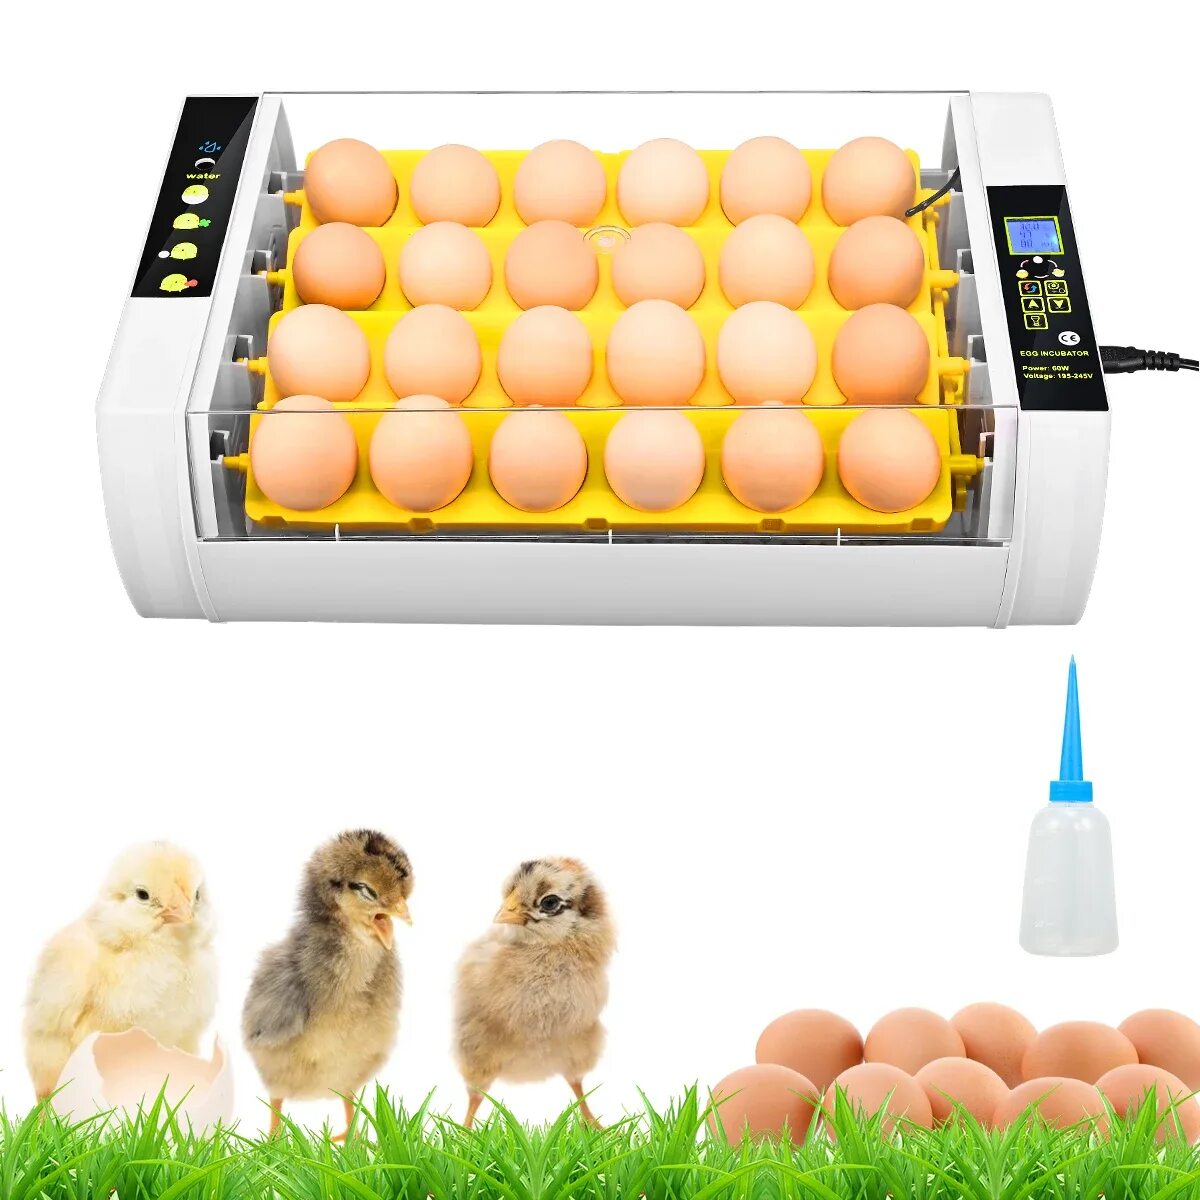 Инкубатор для яиц автоматический магазин. Инкубатор Egg incubator. Инкубатор для яиц Egg incubator QC Pass 04. Fully Automatic Egg incubator. Инкубатор для яиц fully Automatic Egg Incubato.